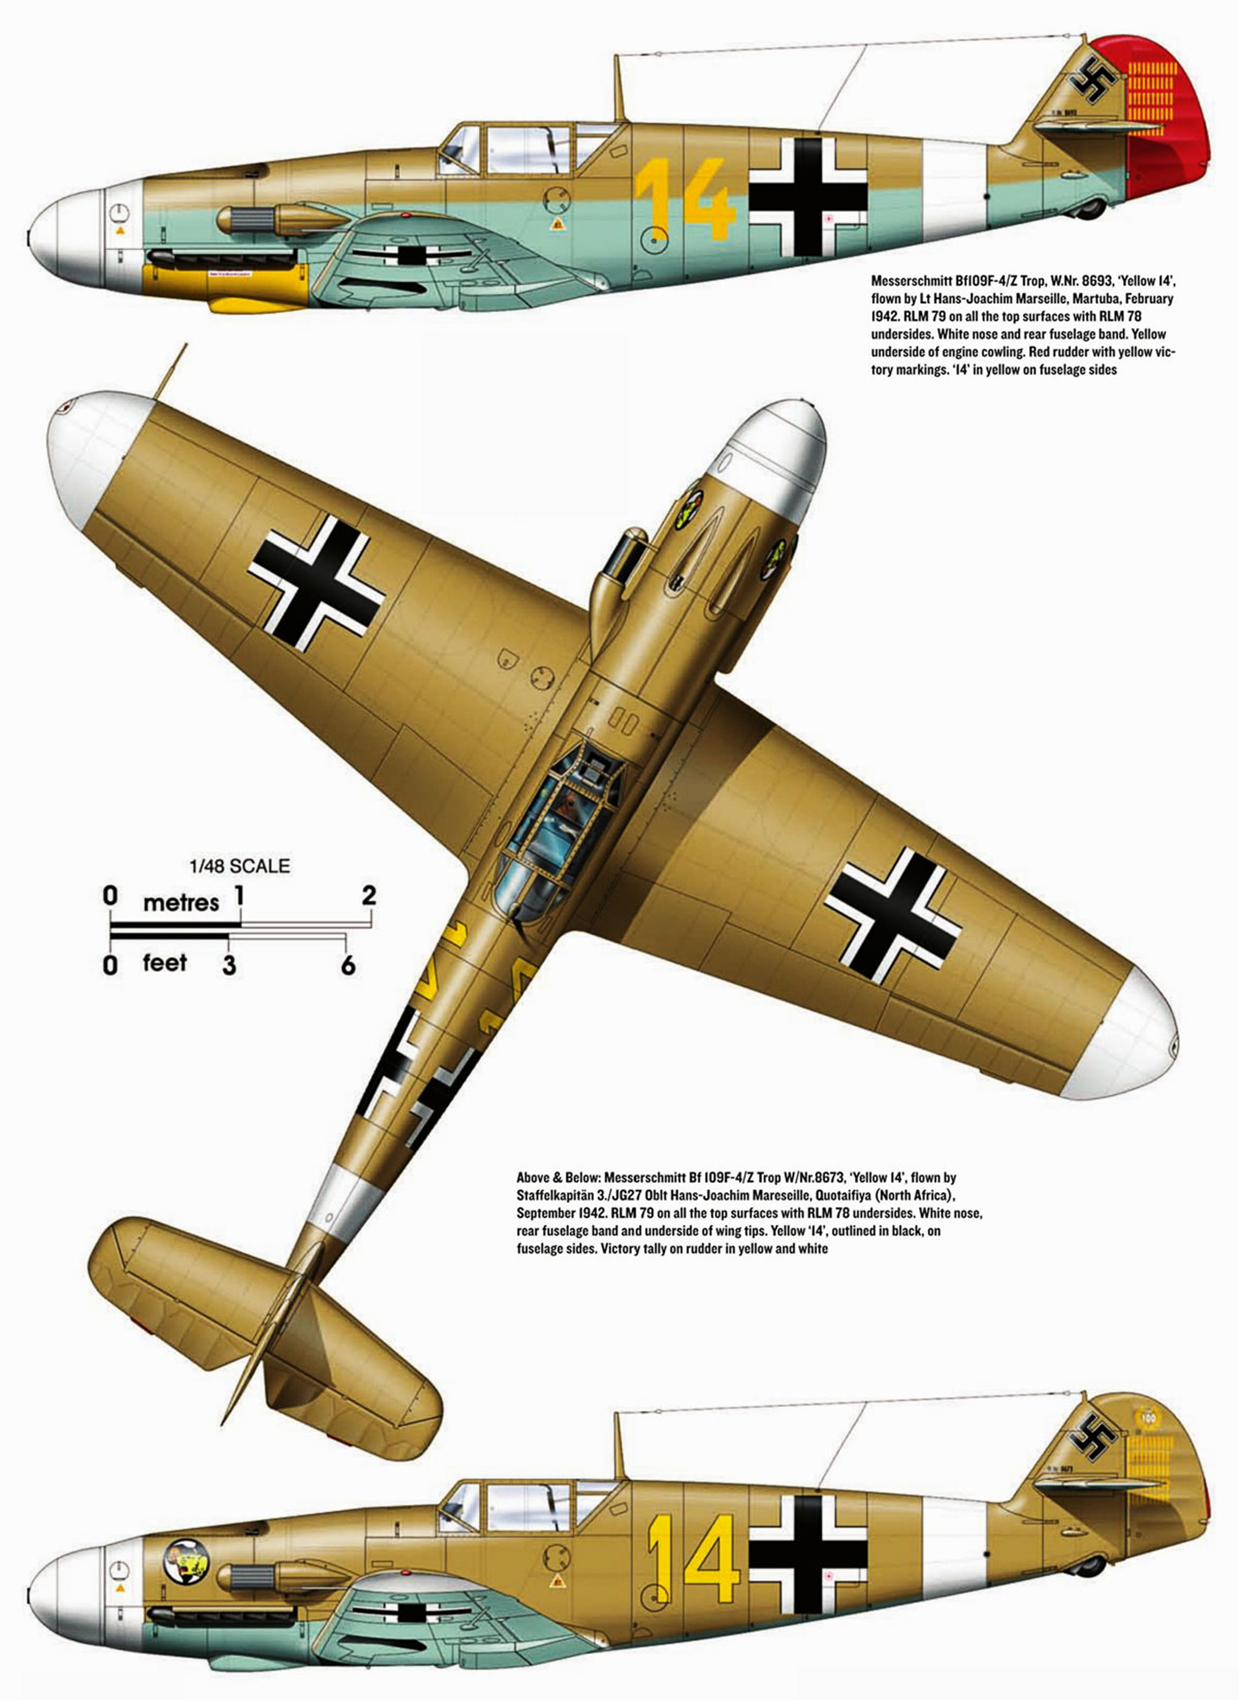 Messerschmitt Bf 109F4Trop 3.JG27 Yellow 14 Hans Joachim Marseille WNr 8693 Feb 1942 0A